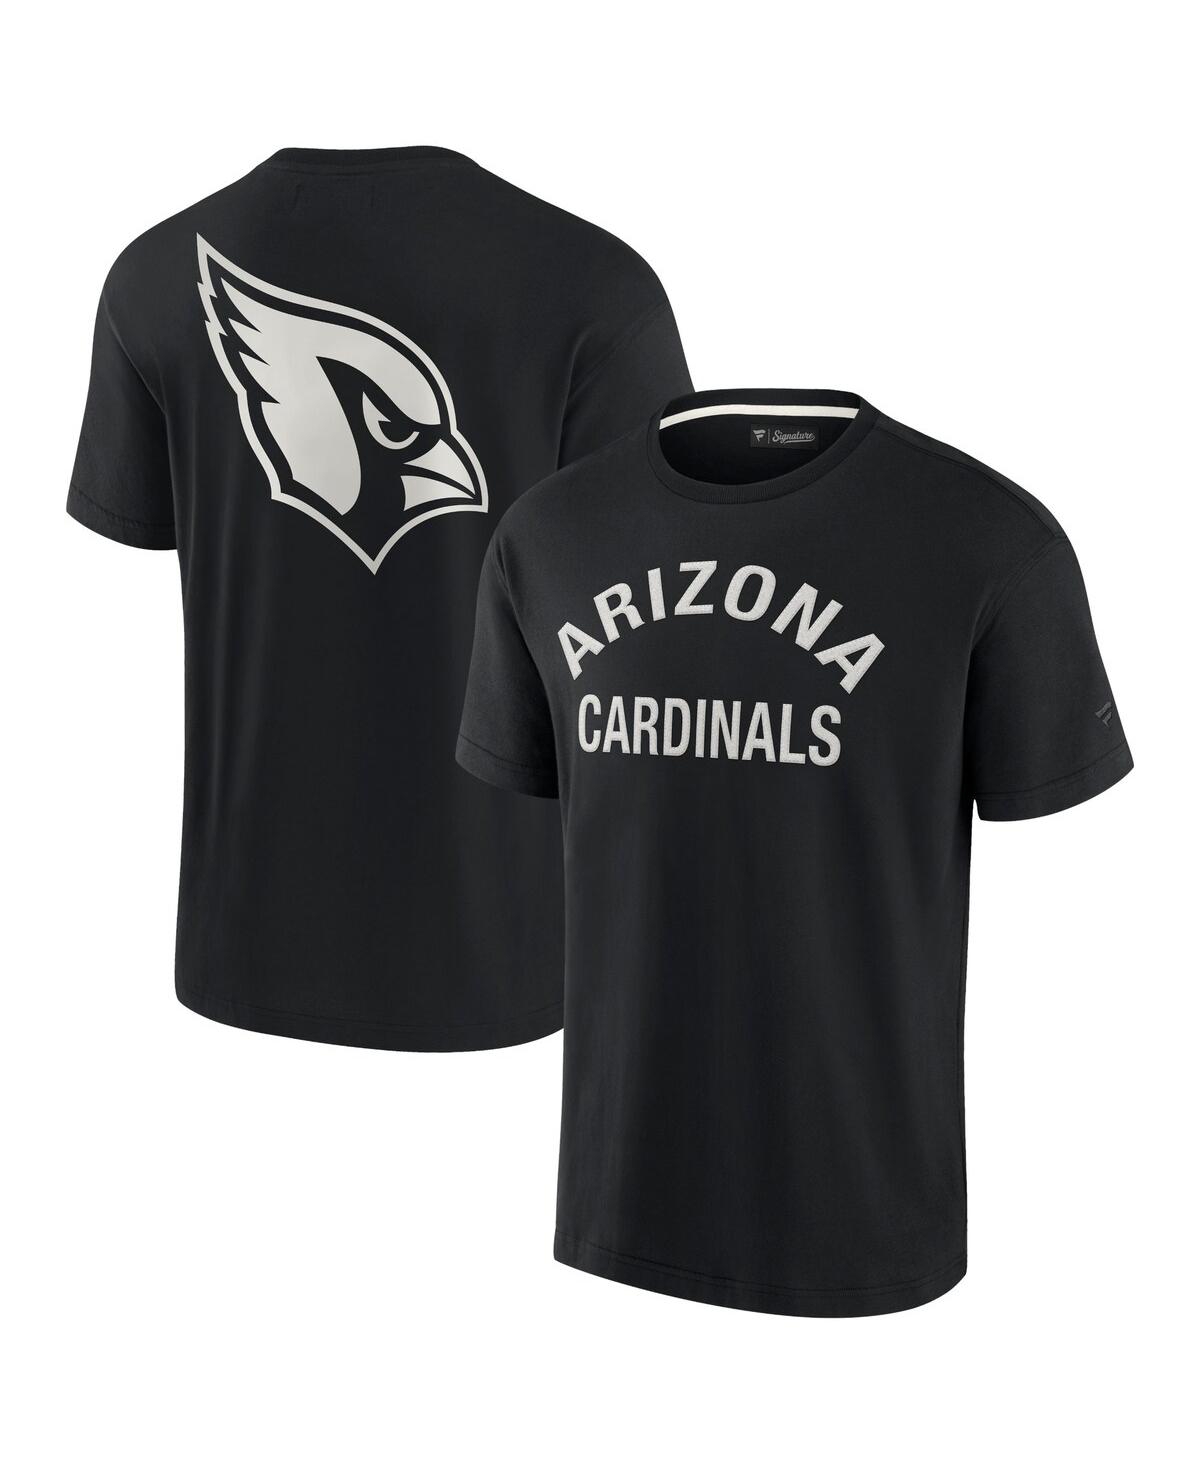 Shop Fanatics Signature Men's And Women's  Black Arizona Cardinals Super Soft Short Sleeve T-shirt